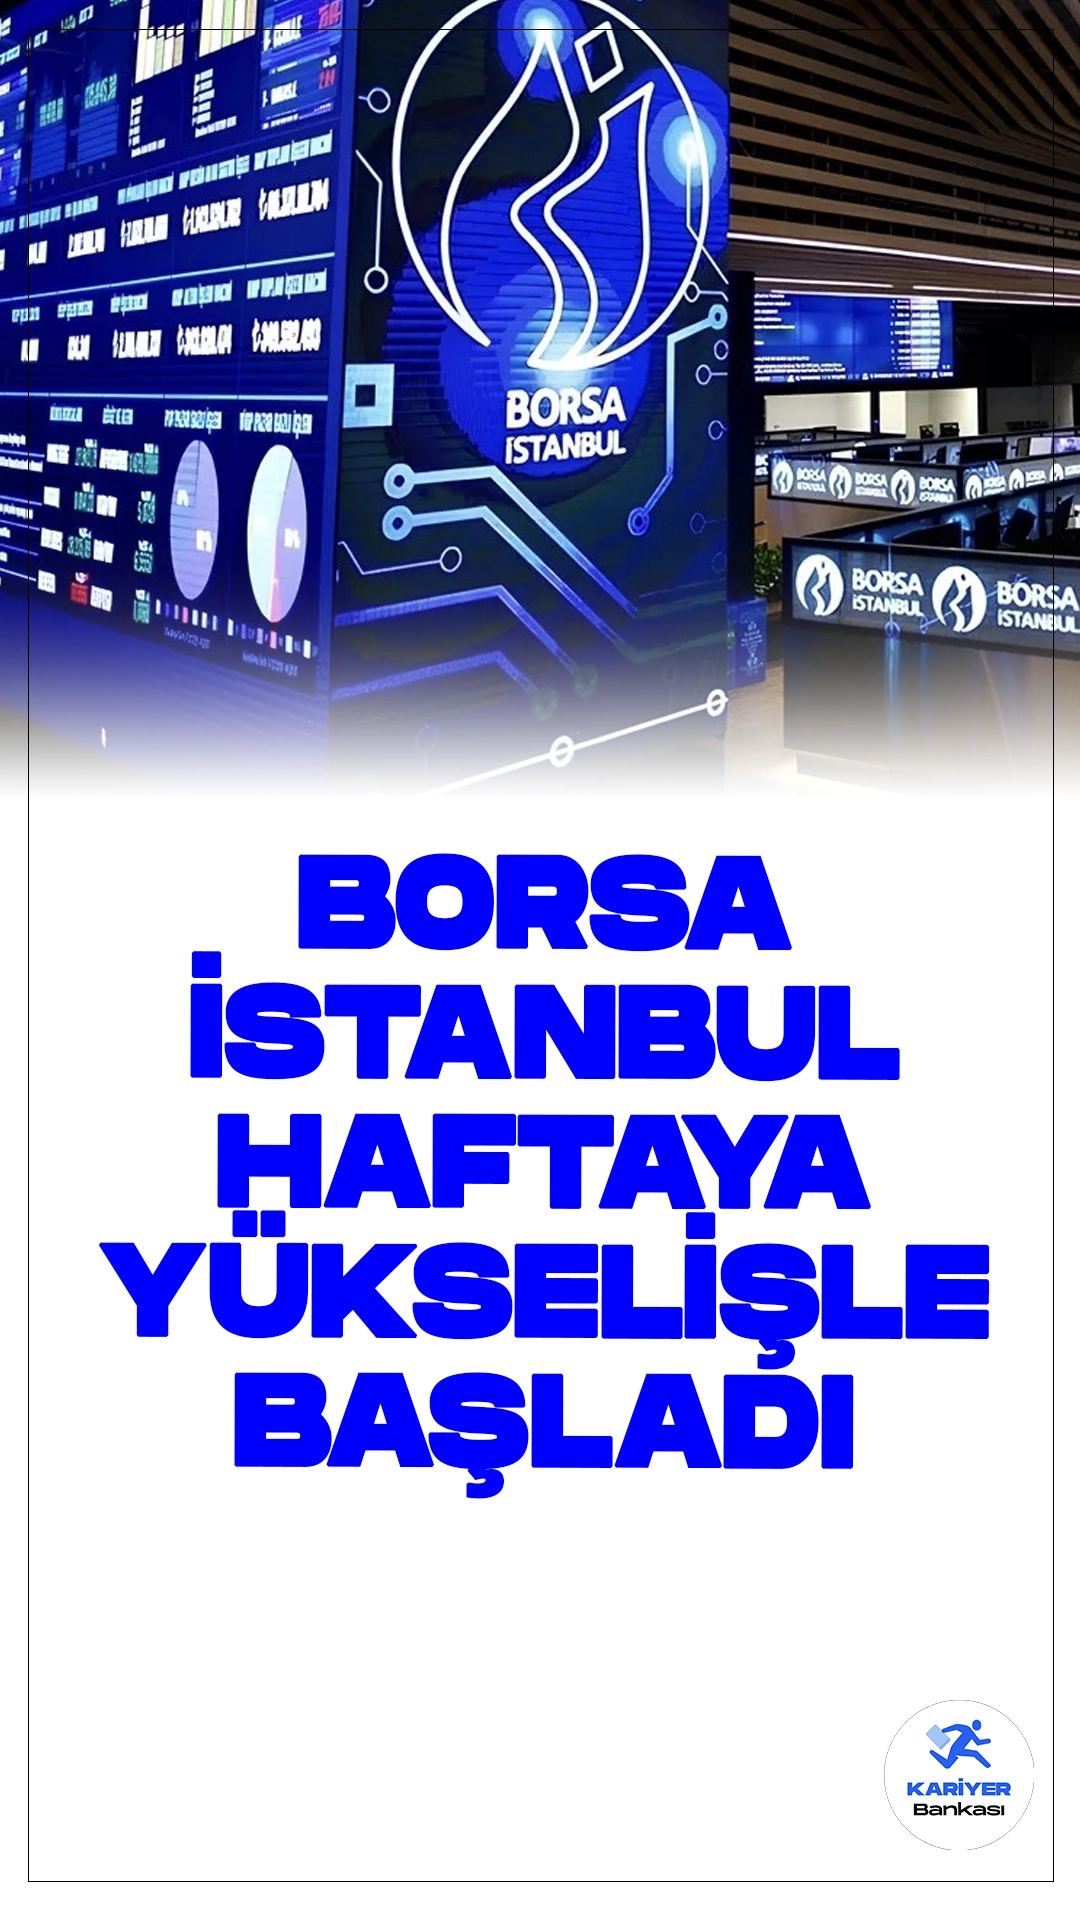 Borsa İstanbul Haftaya Yükselişle Başladı.Borsa İstanbul'da BIST 100 endeksi, haftaya yüzde 0,41 artışla 10.443,16 puandan başladı. Açılışta BIST 100 endeksi, önceki kapanışa göre 42,69 puanlık bir yükselişle 10.443,16 puana ulaştı.